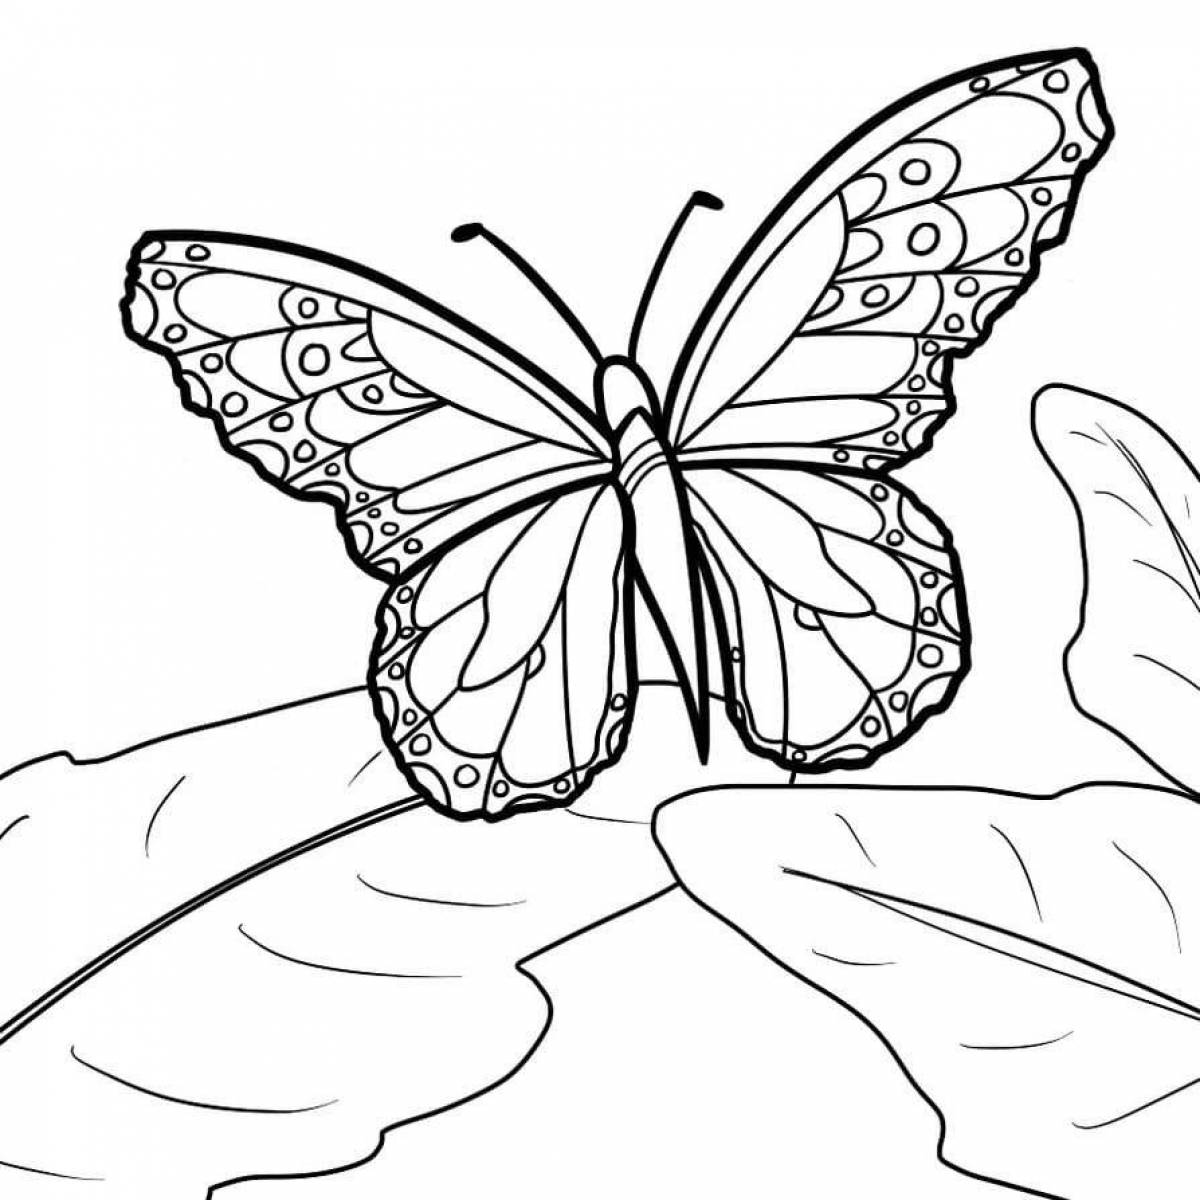 Раскраска величественная бабочка для детей 6-7 лет